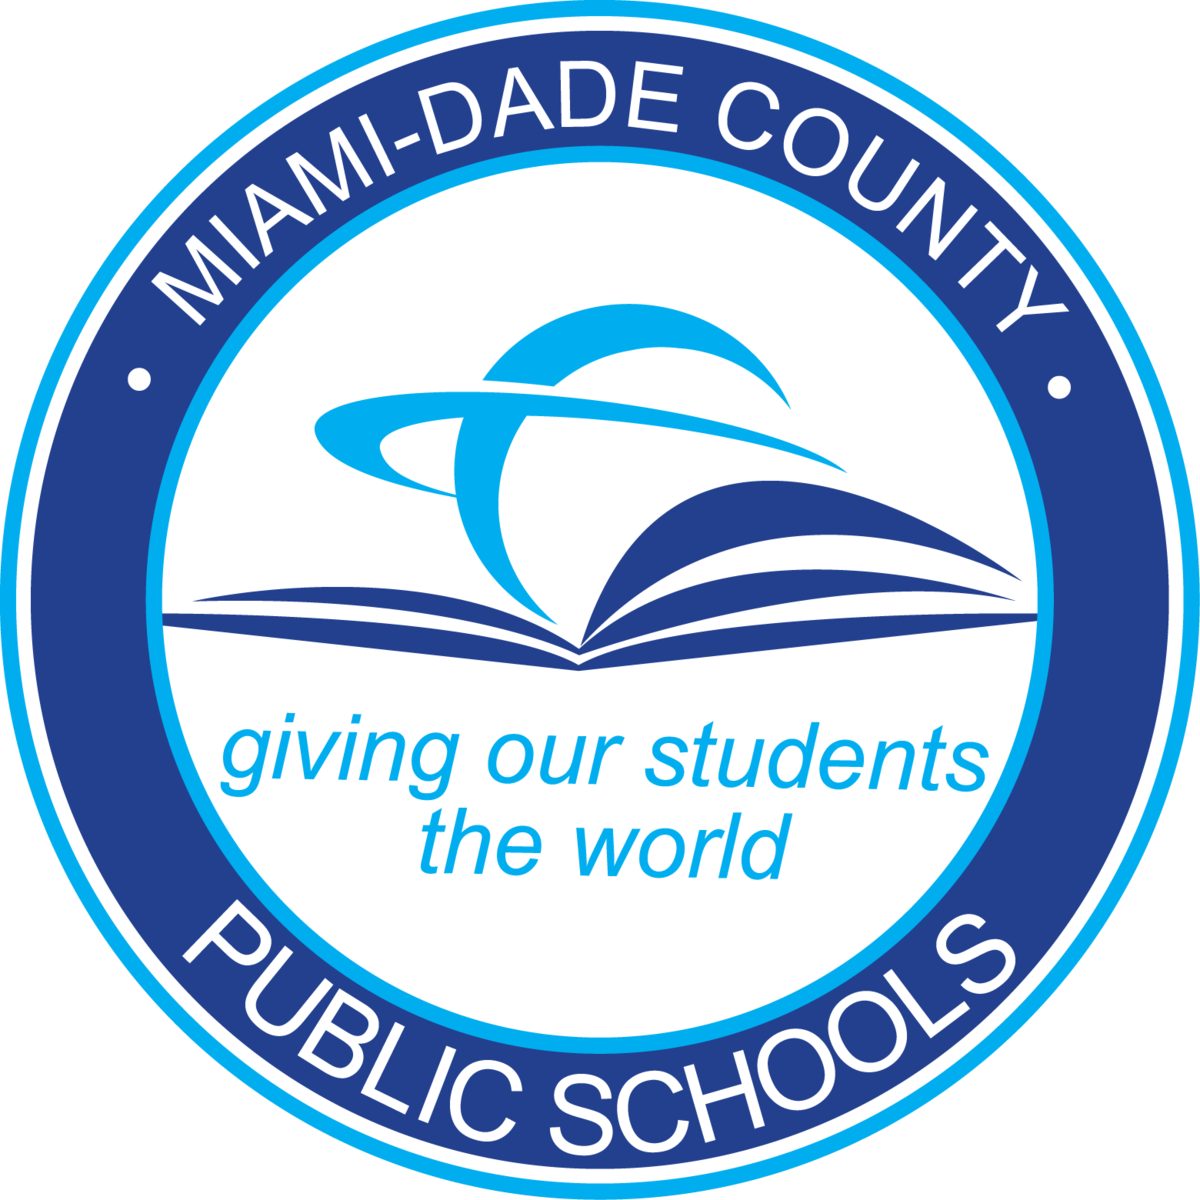 MIAMI-DADE COUNTY PUBLIC SCHOOLS